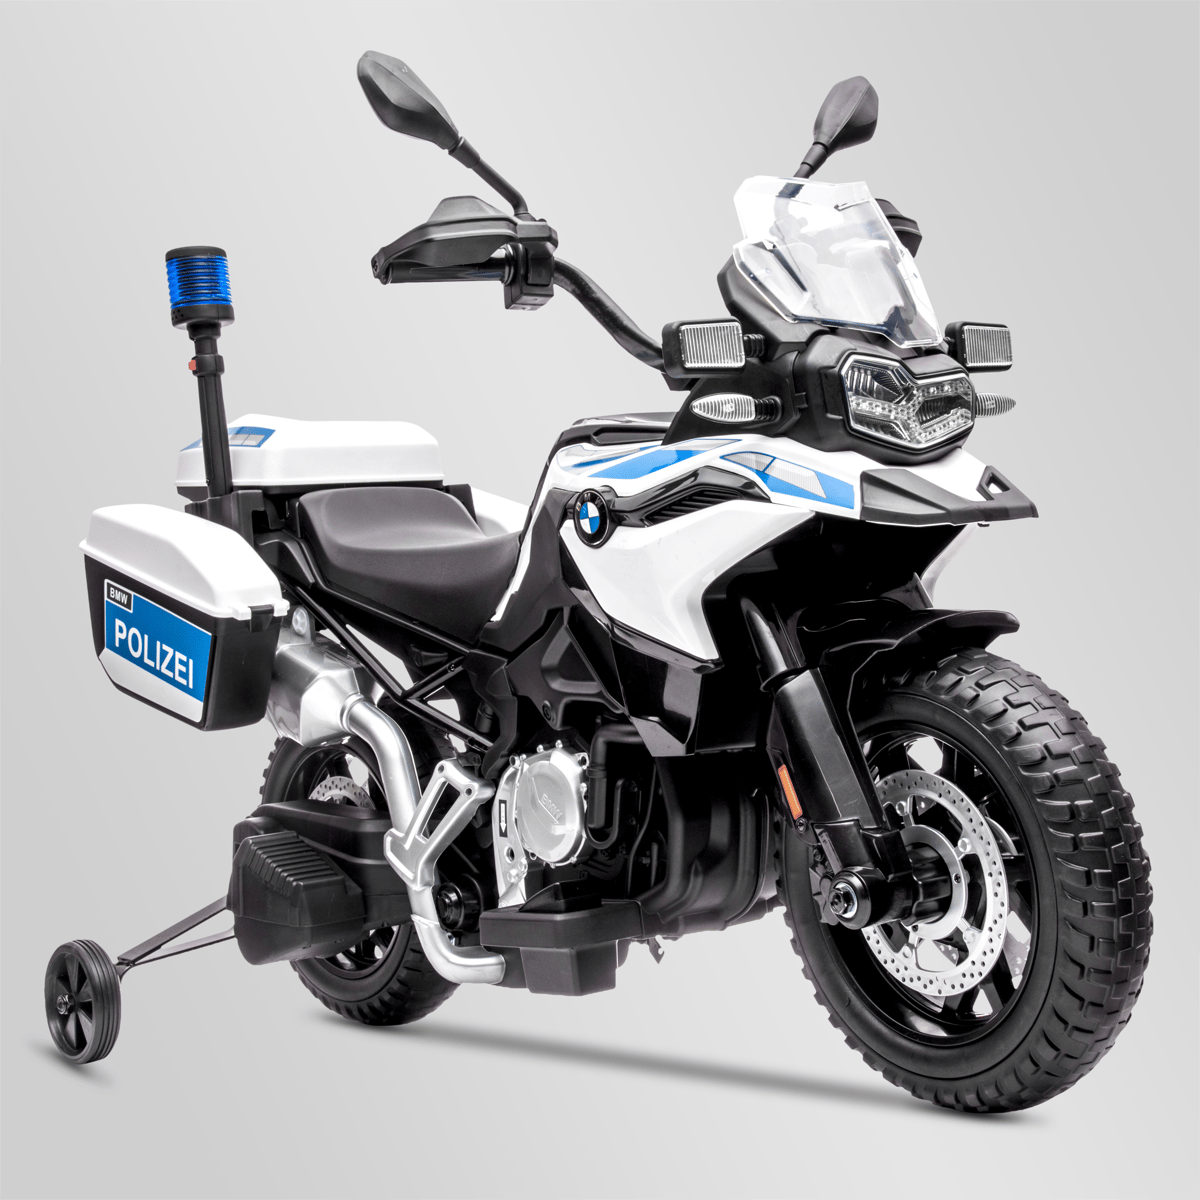 Moto électrique enfant bmw f850 gs police 12v | Smallmx - Dirt bike, Pit  bike, Quads, Minimoto